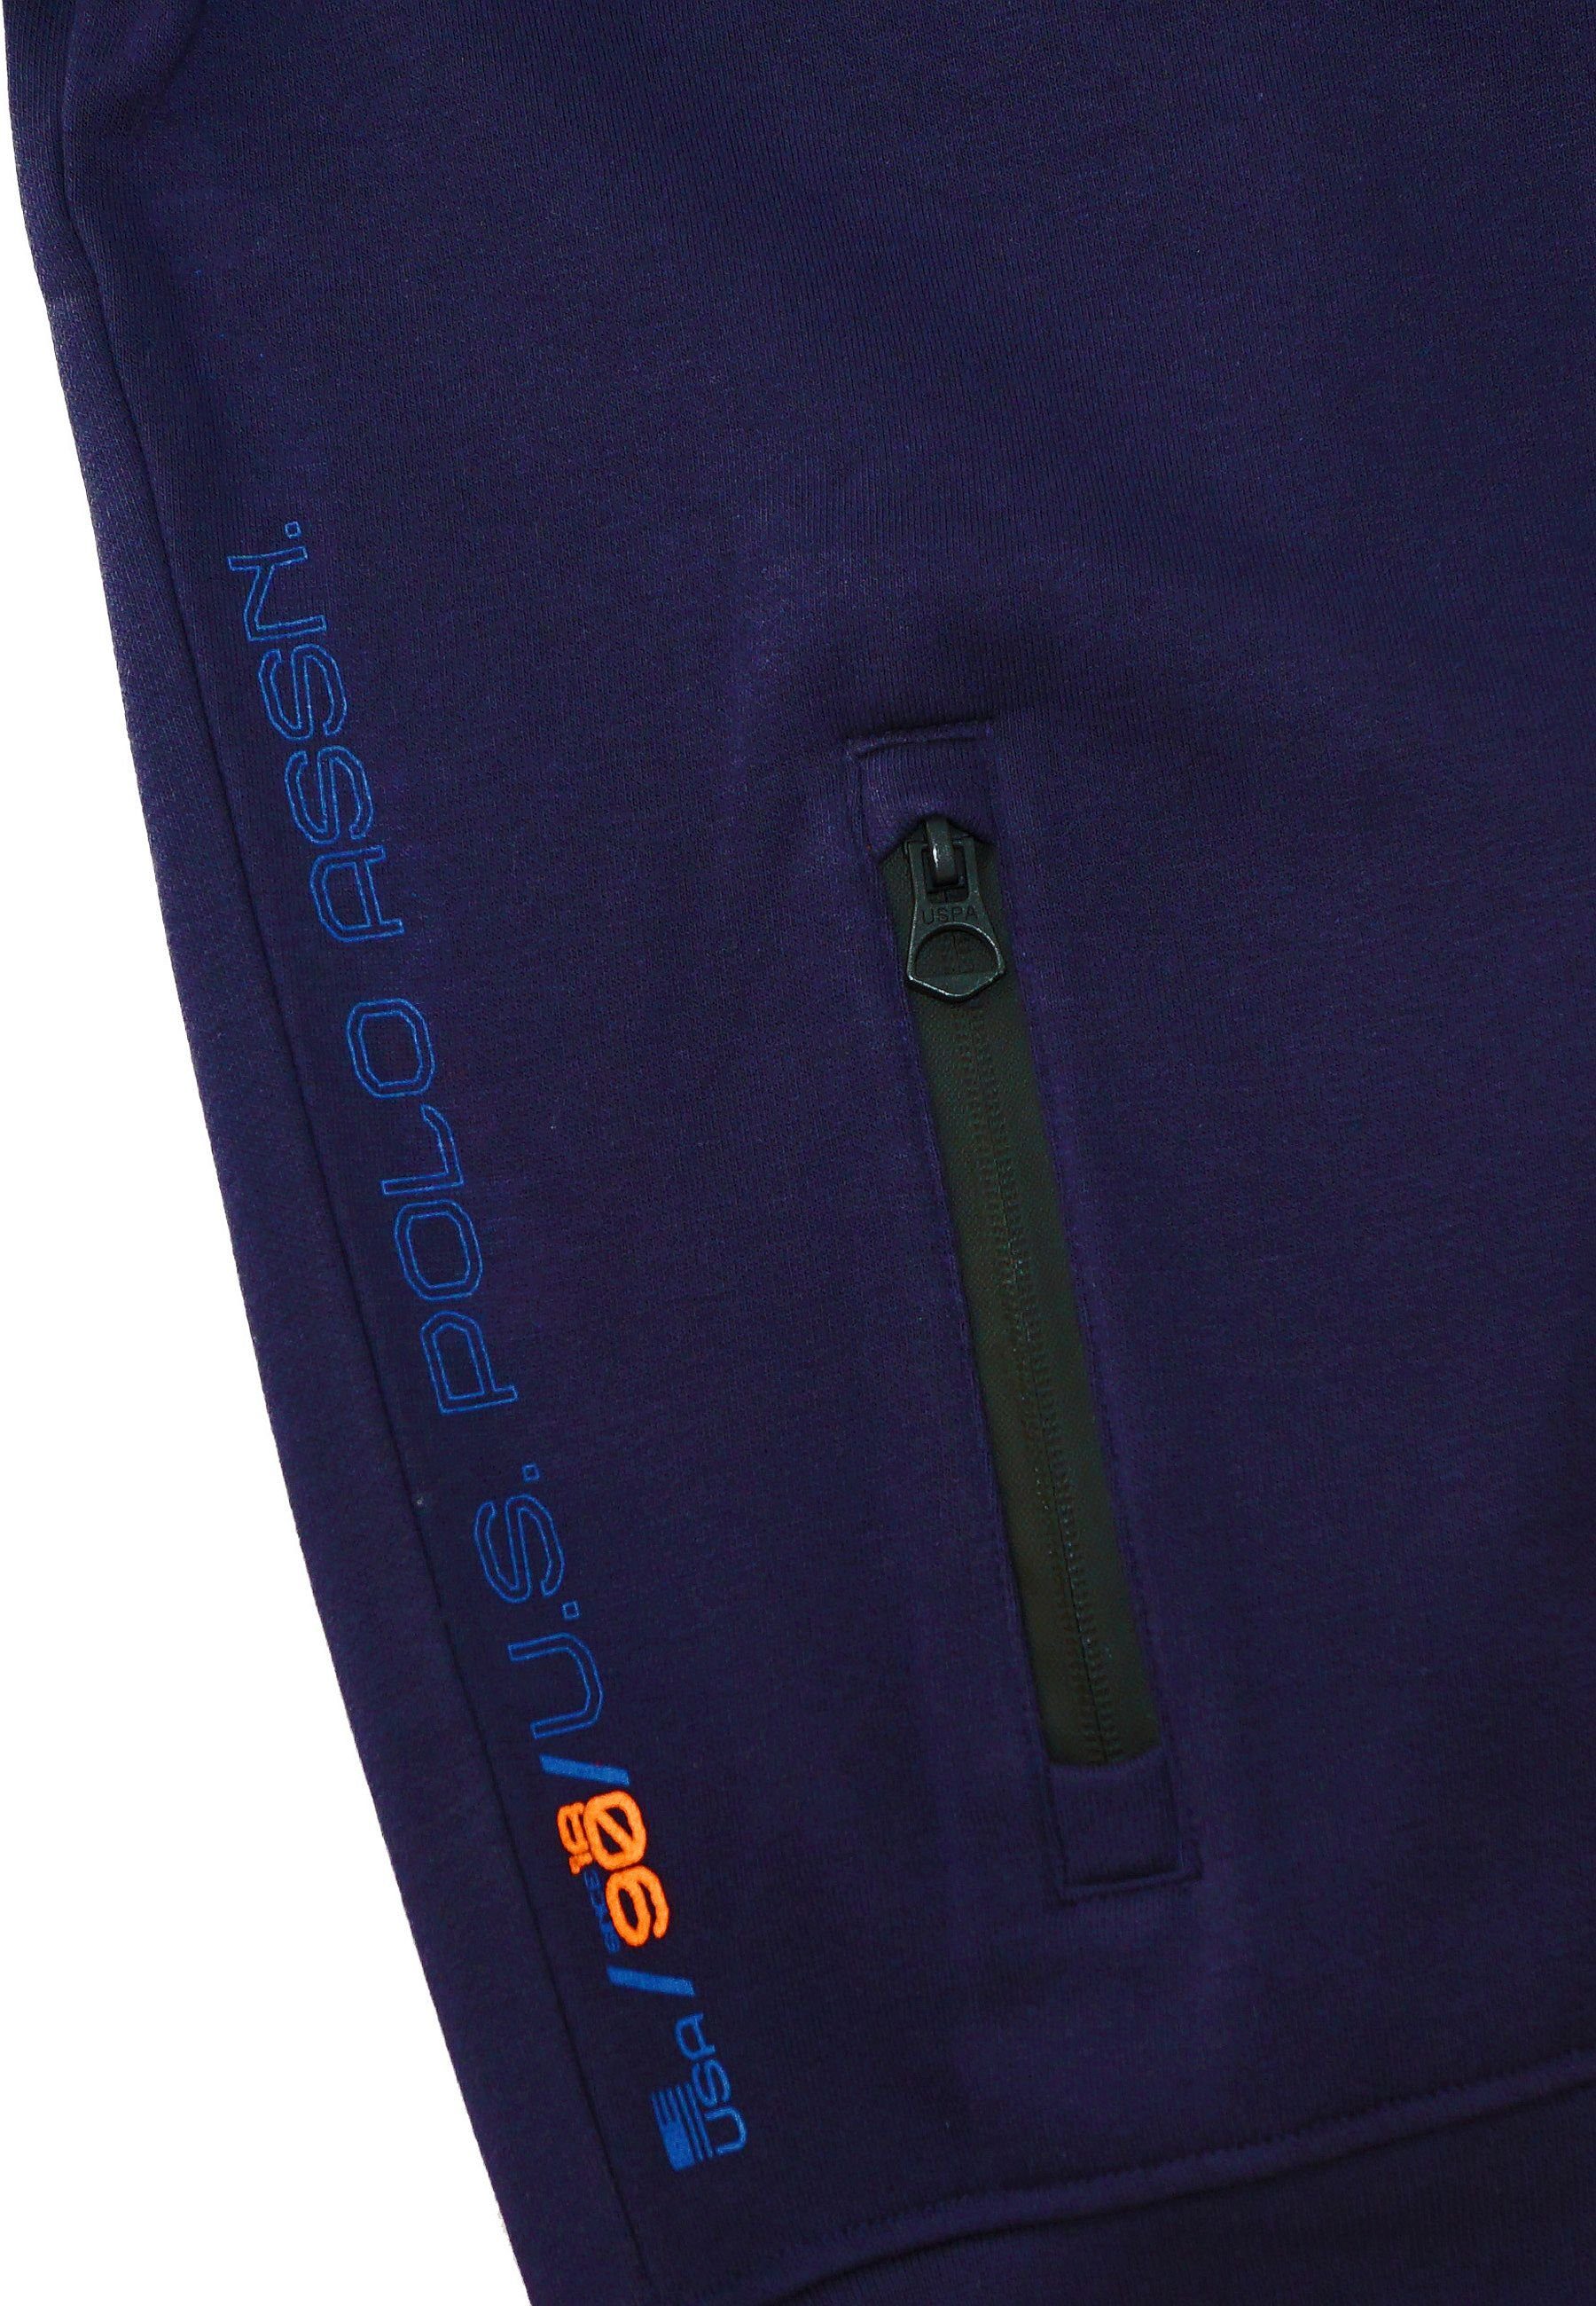 Polo No.3 U.S. Zip dunkelblau Sweatjacke Jacke Full Pro Sweatjacket Assn